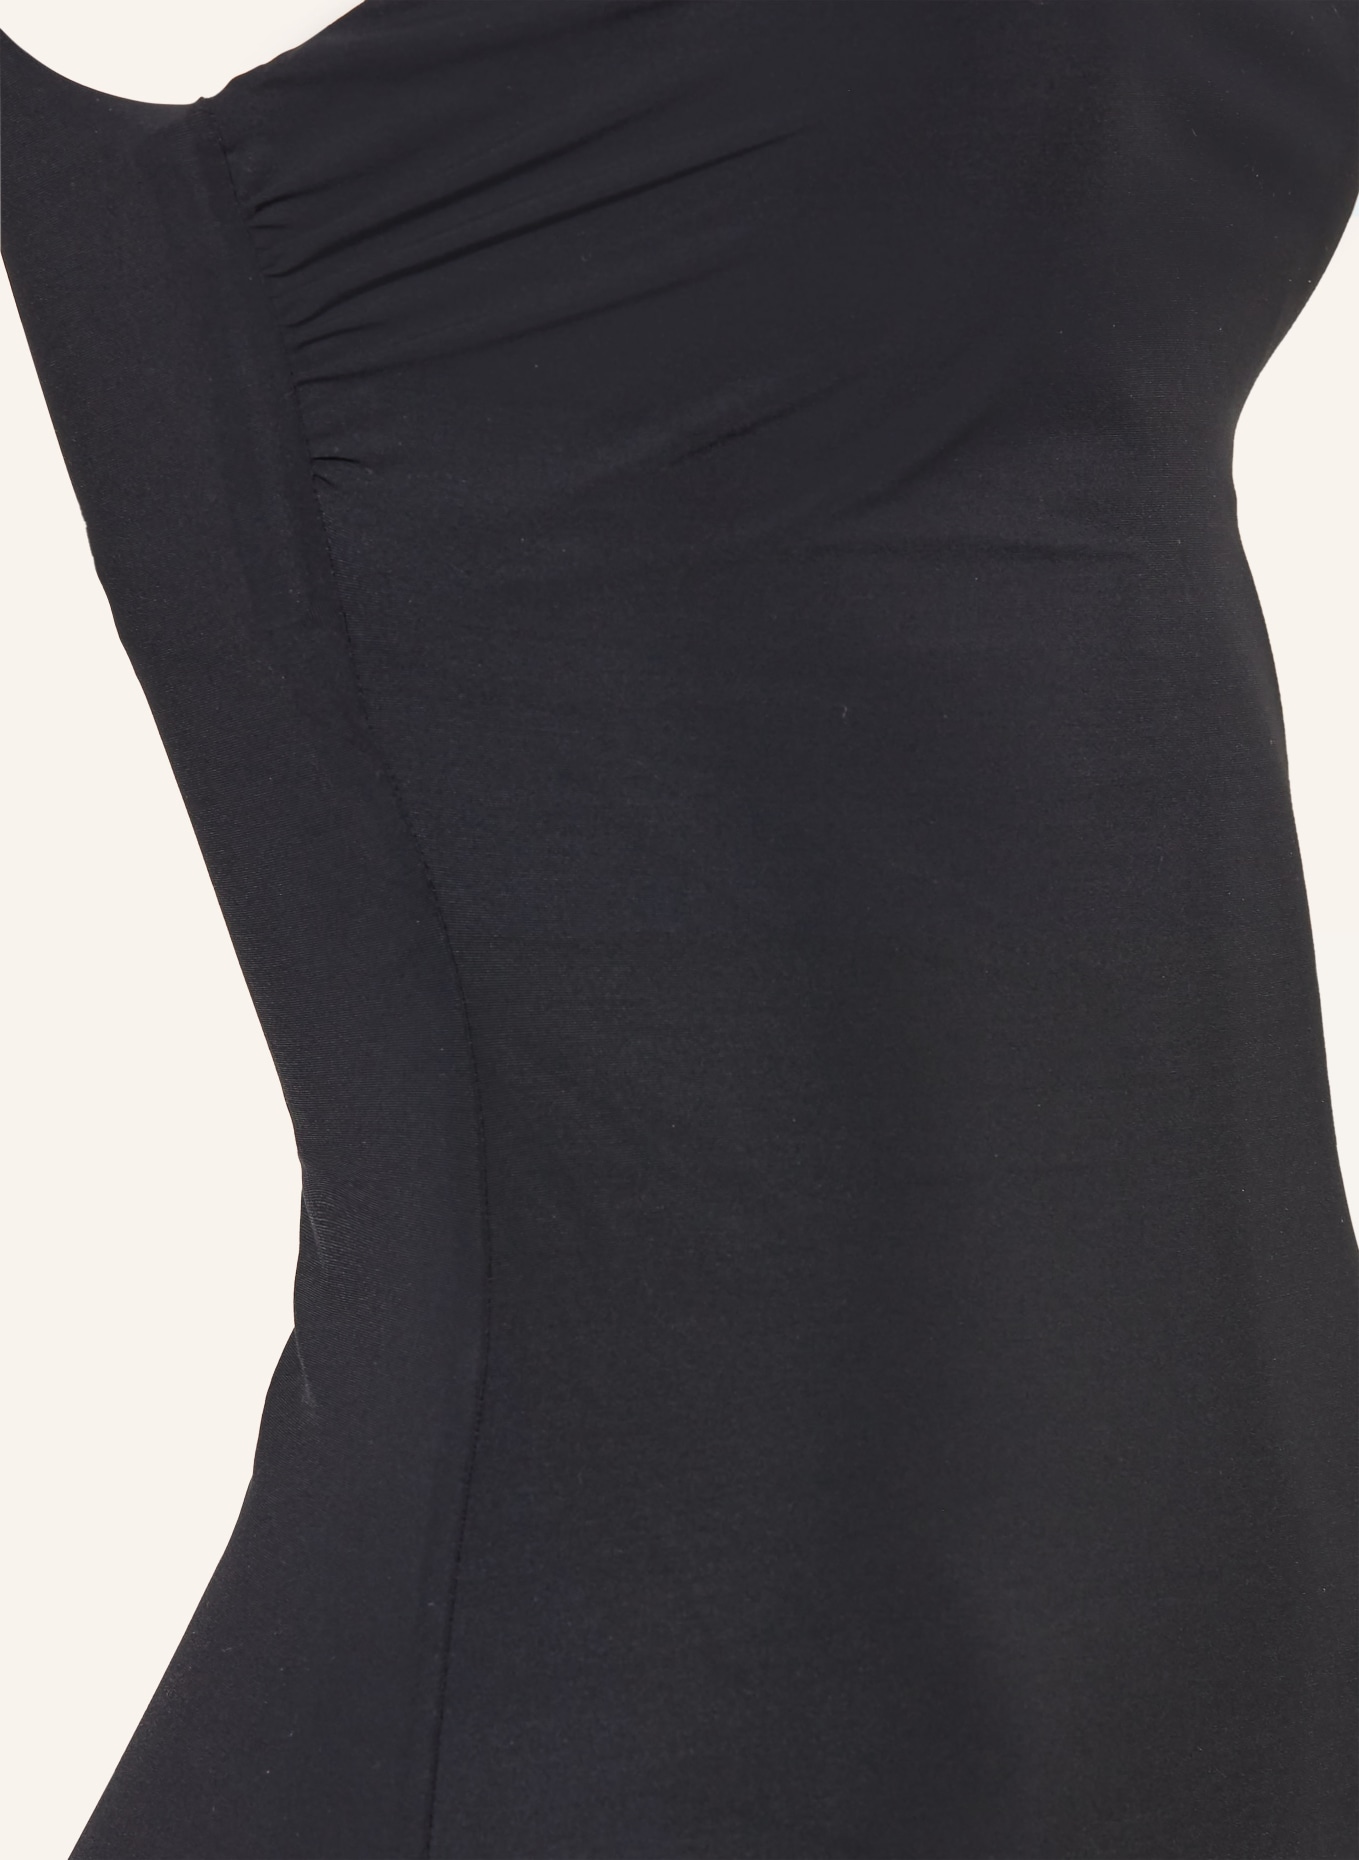 JETS Australia One-shoulder swimsuit JETSET, Color: BLACK (Image 4)